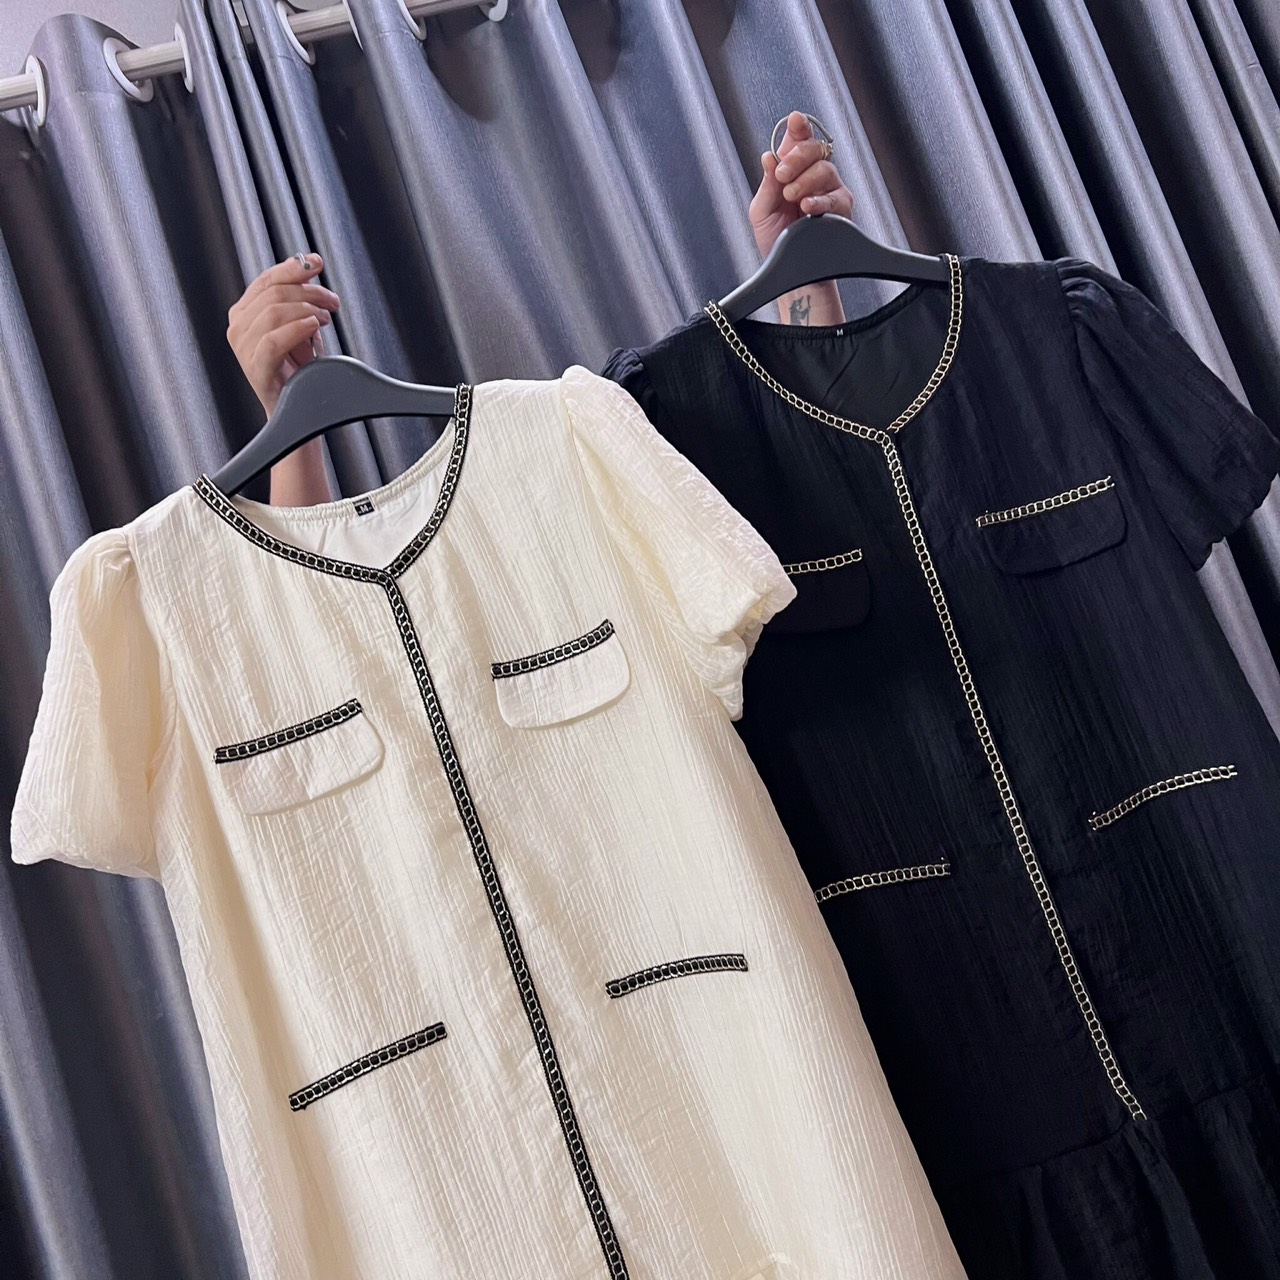 VÁY THIẾT KẾ - Váy Bầu Công Sở Cổ Tim A17 Chất Liệu Lụa Tơ Tằm Cao Cấp Siêu Xinh